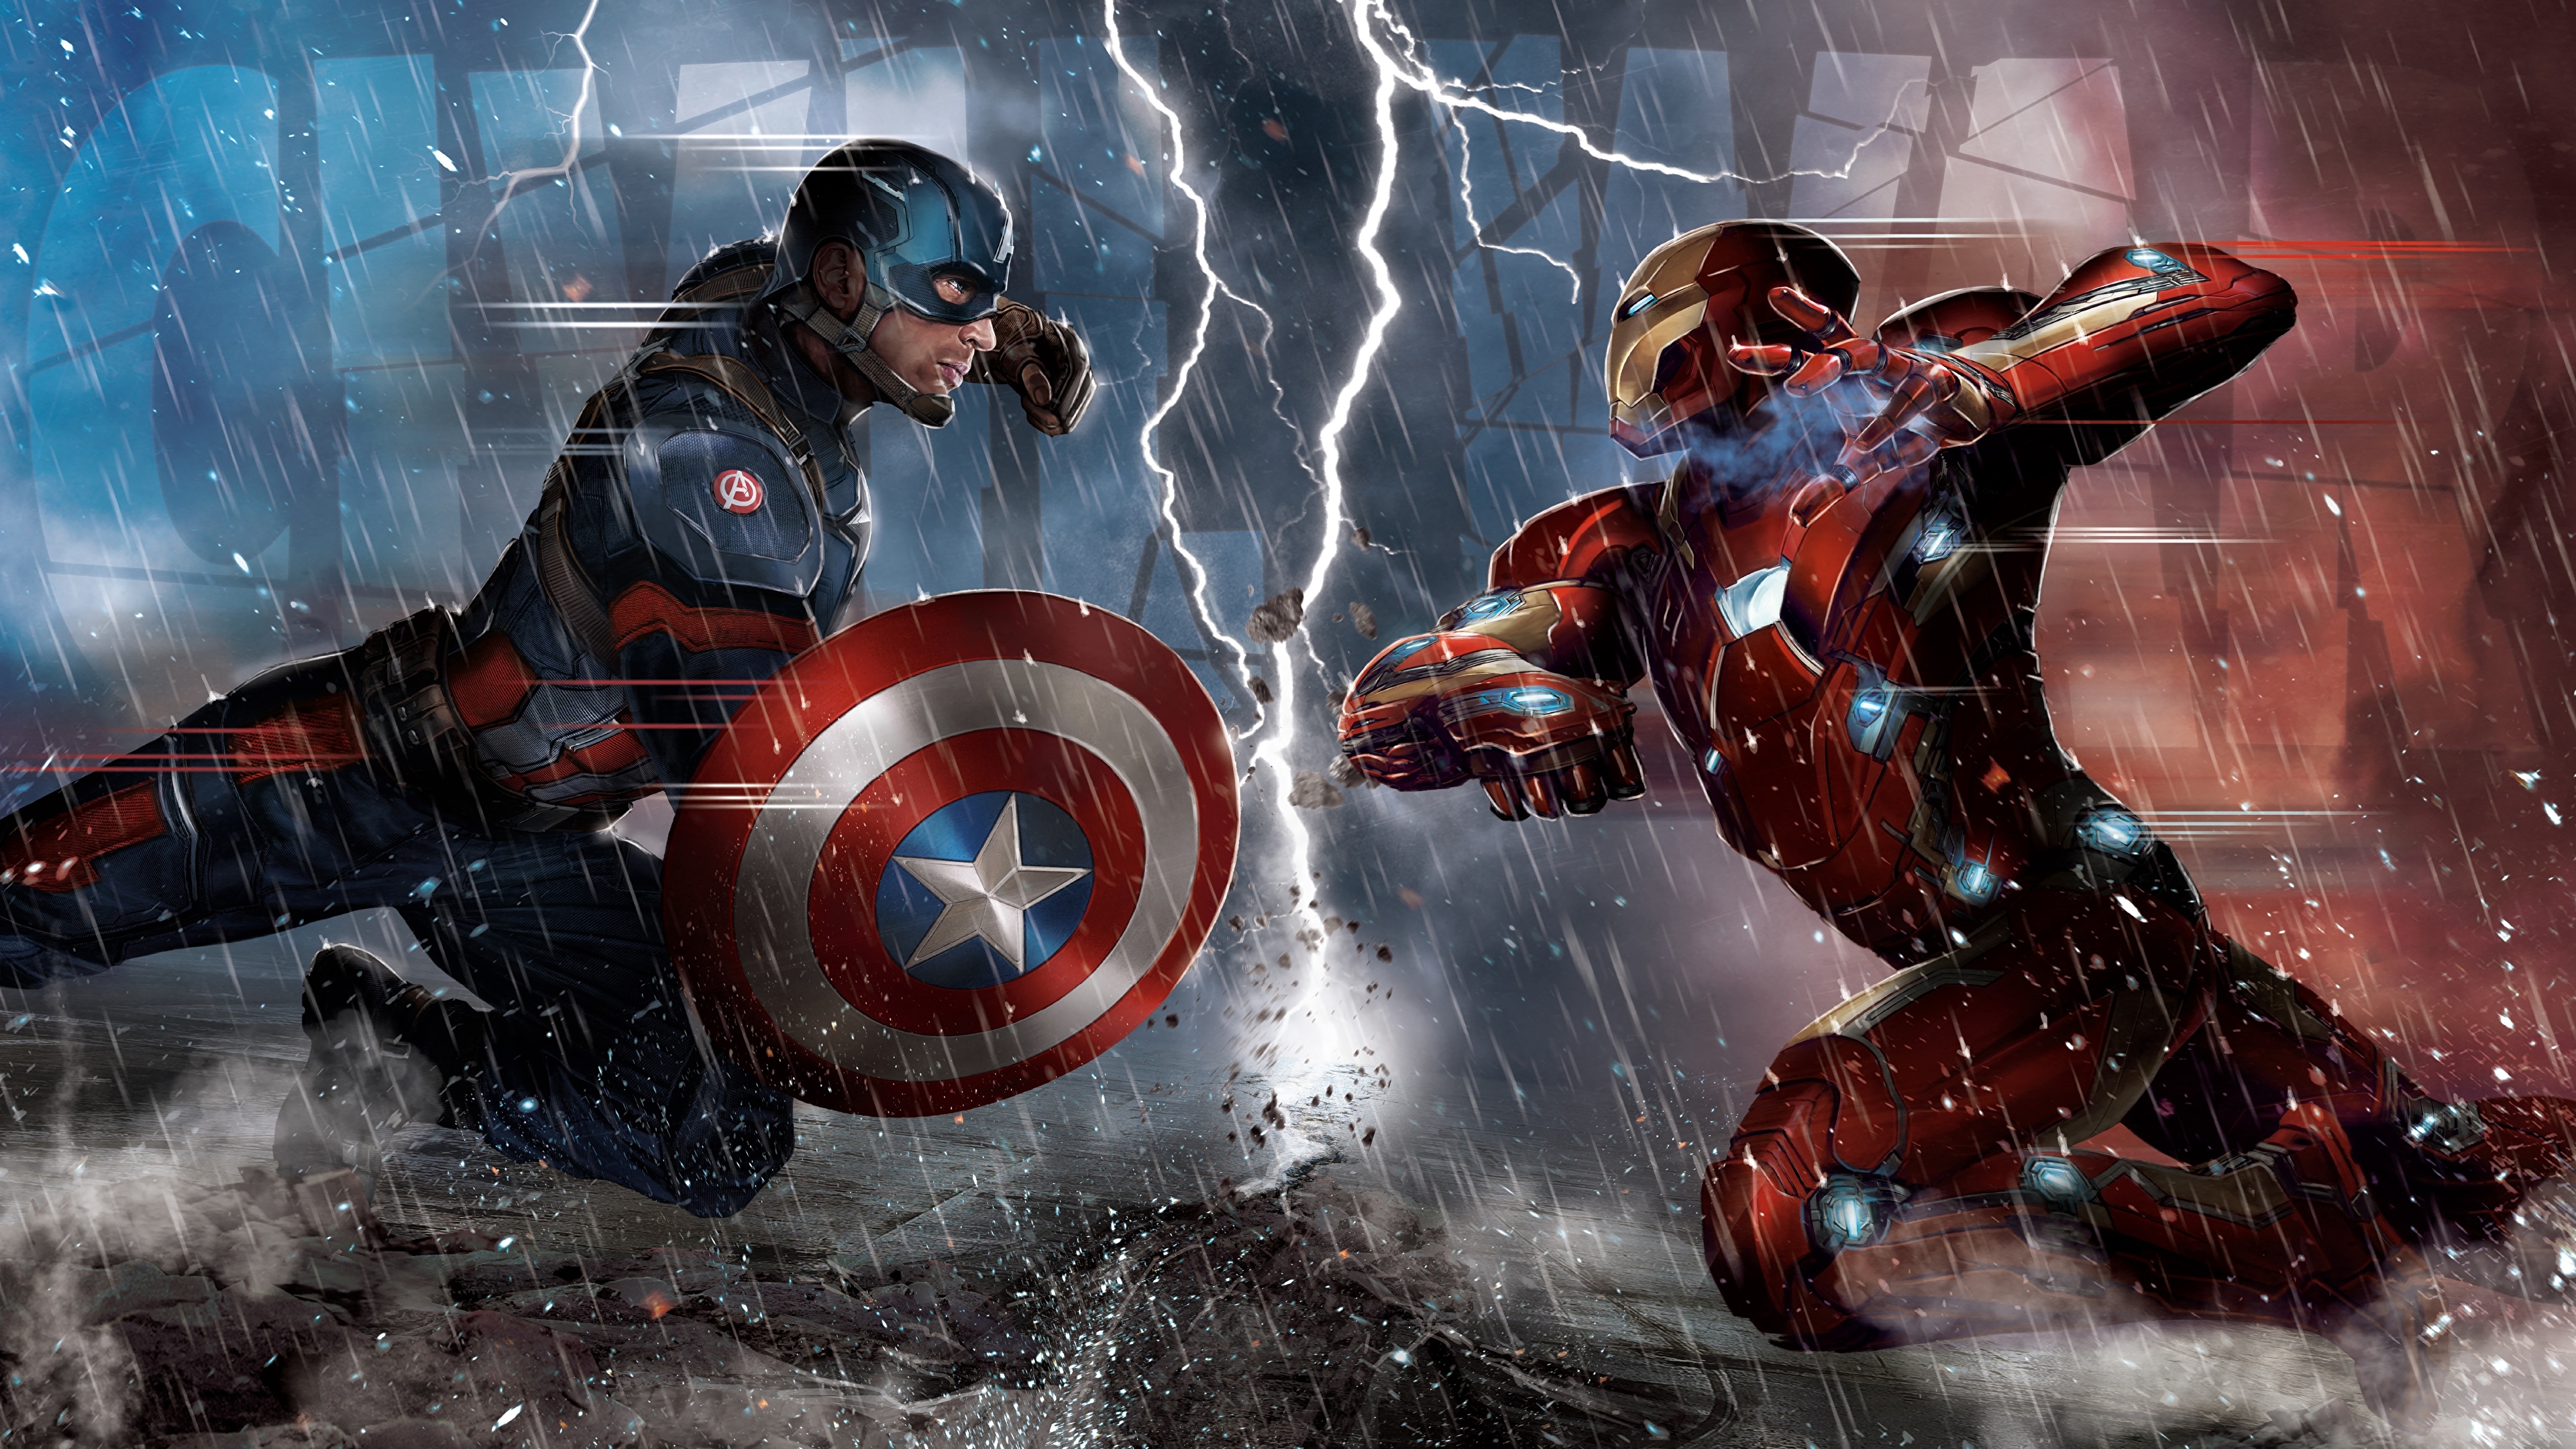 壁紙 3840x2160 戦闘 アイアンマン キャプテン アメリカ 雨 Captain America Civil War 盾 雷 映画 ダウンロード 写真